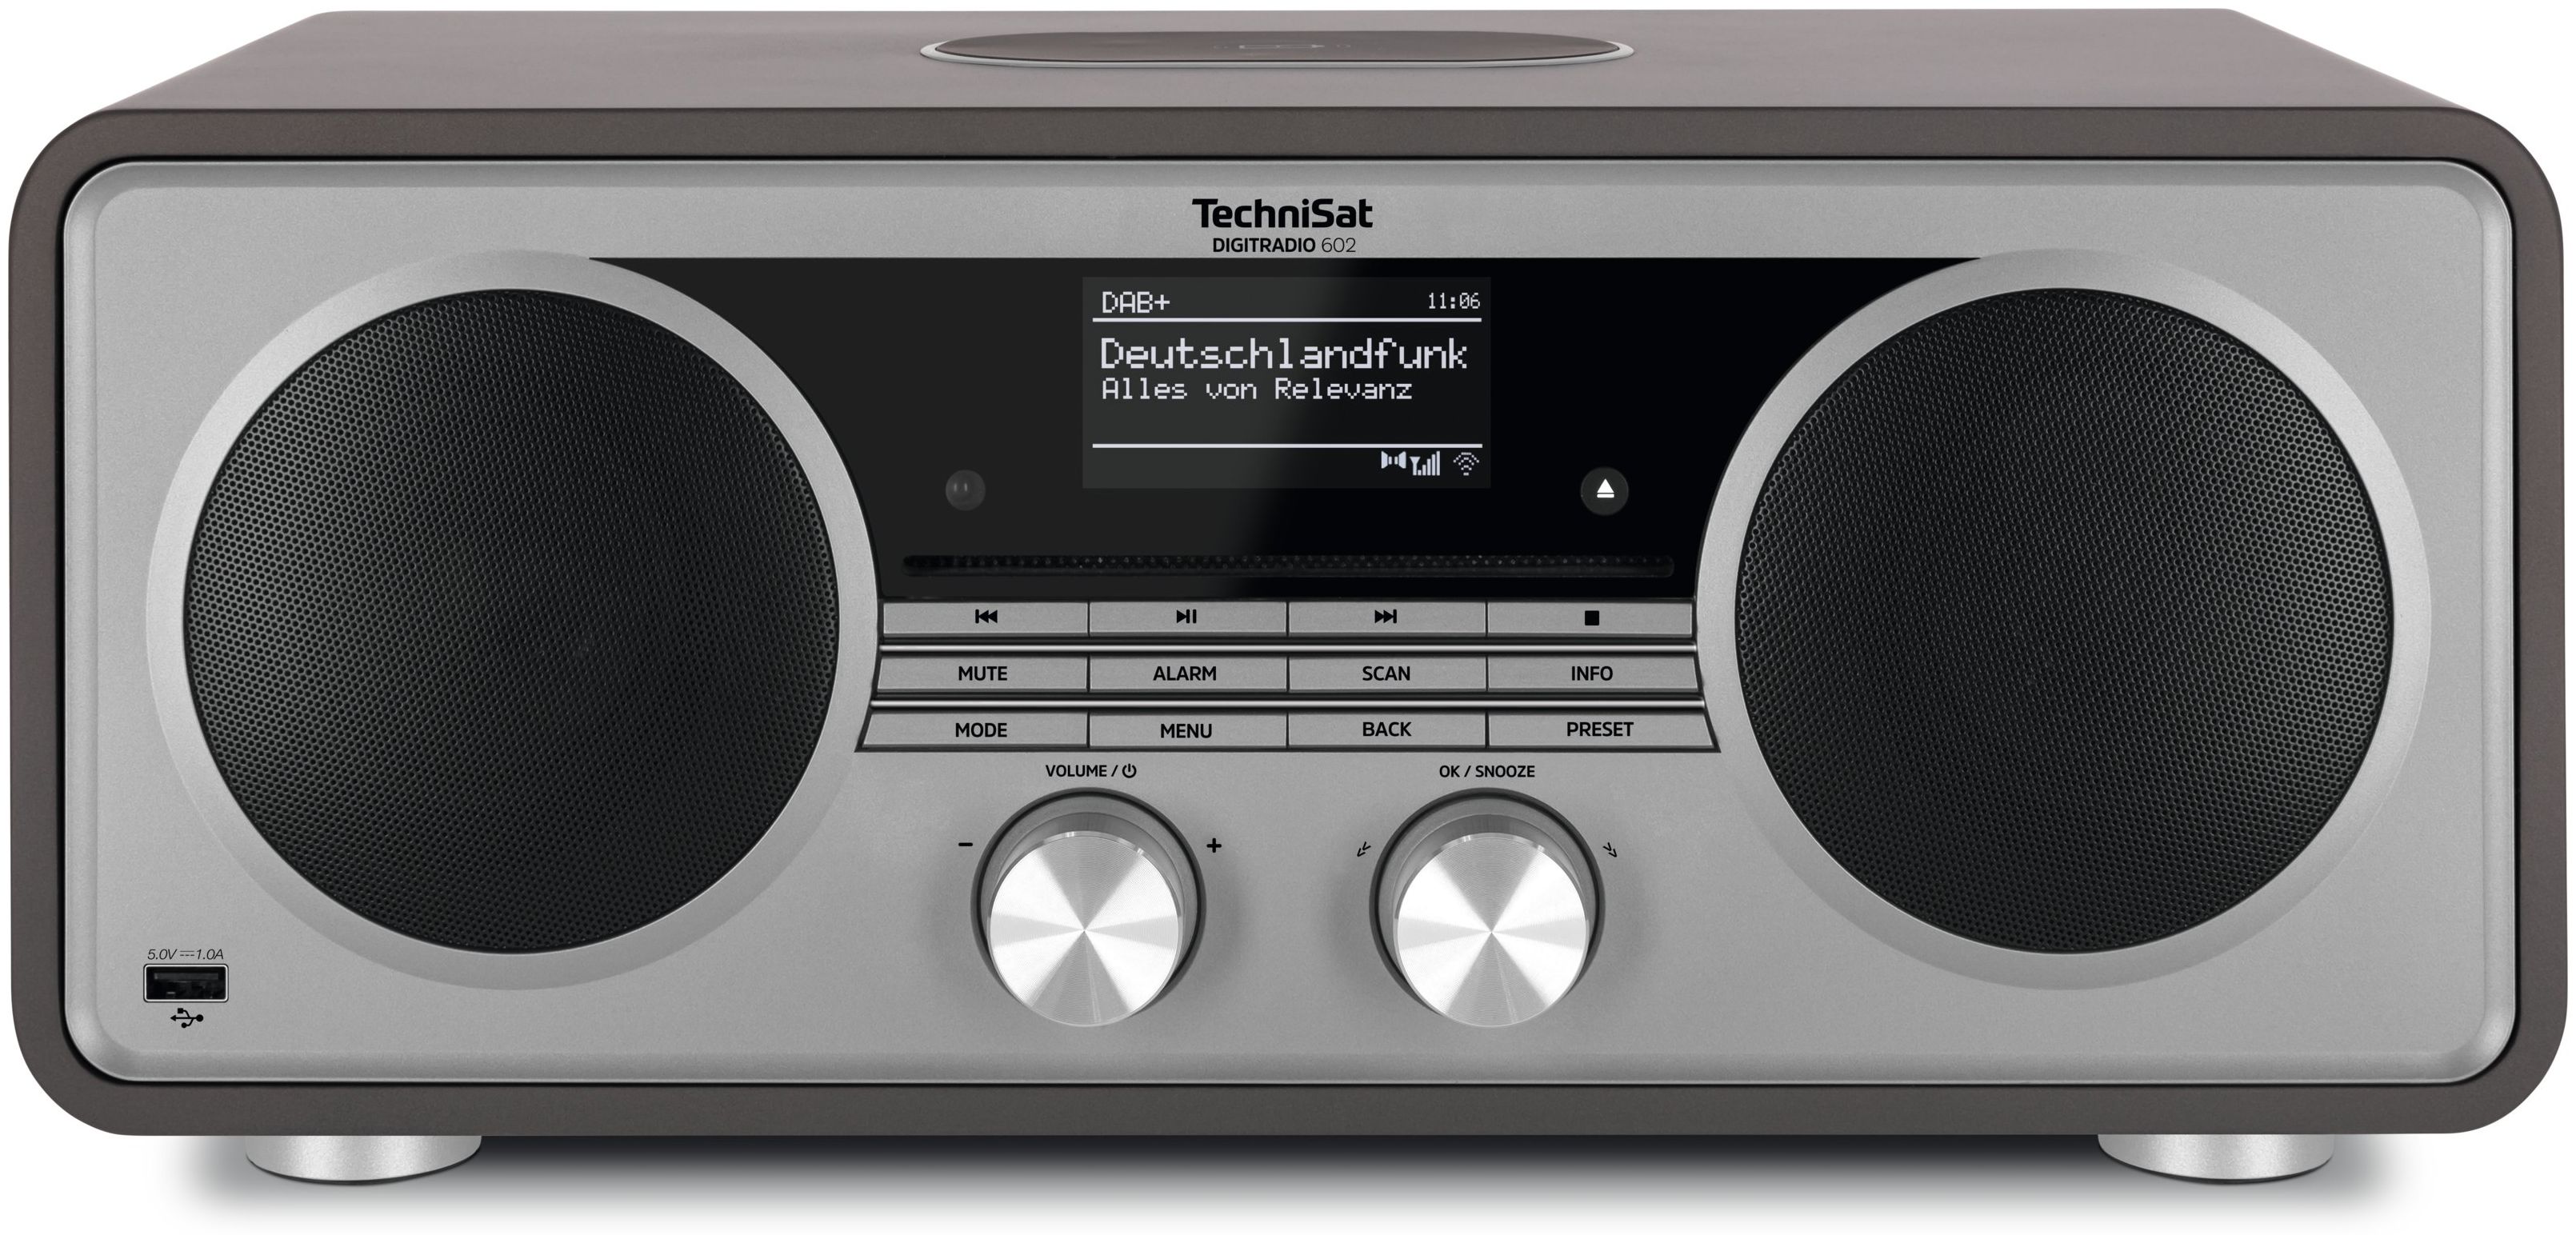 Silber) (Anthrazit, 602 DigitRadio Bluetooth FM Technomarkt Radio TechniSat DAB+, von expert